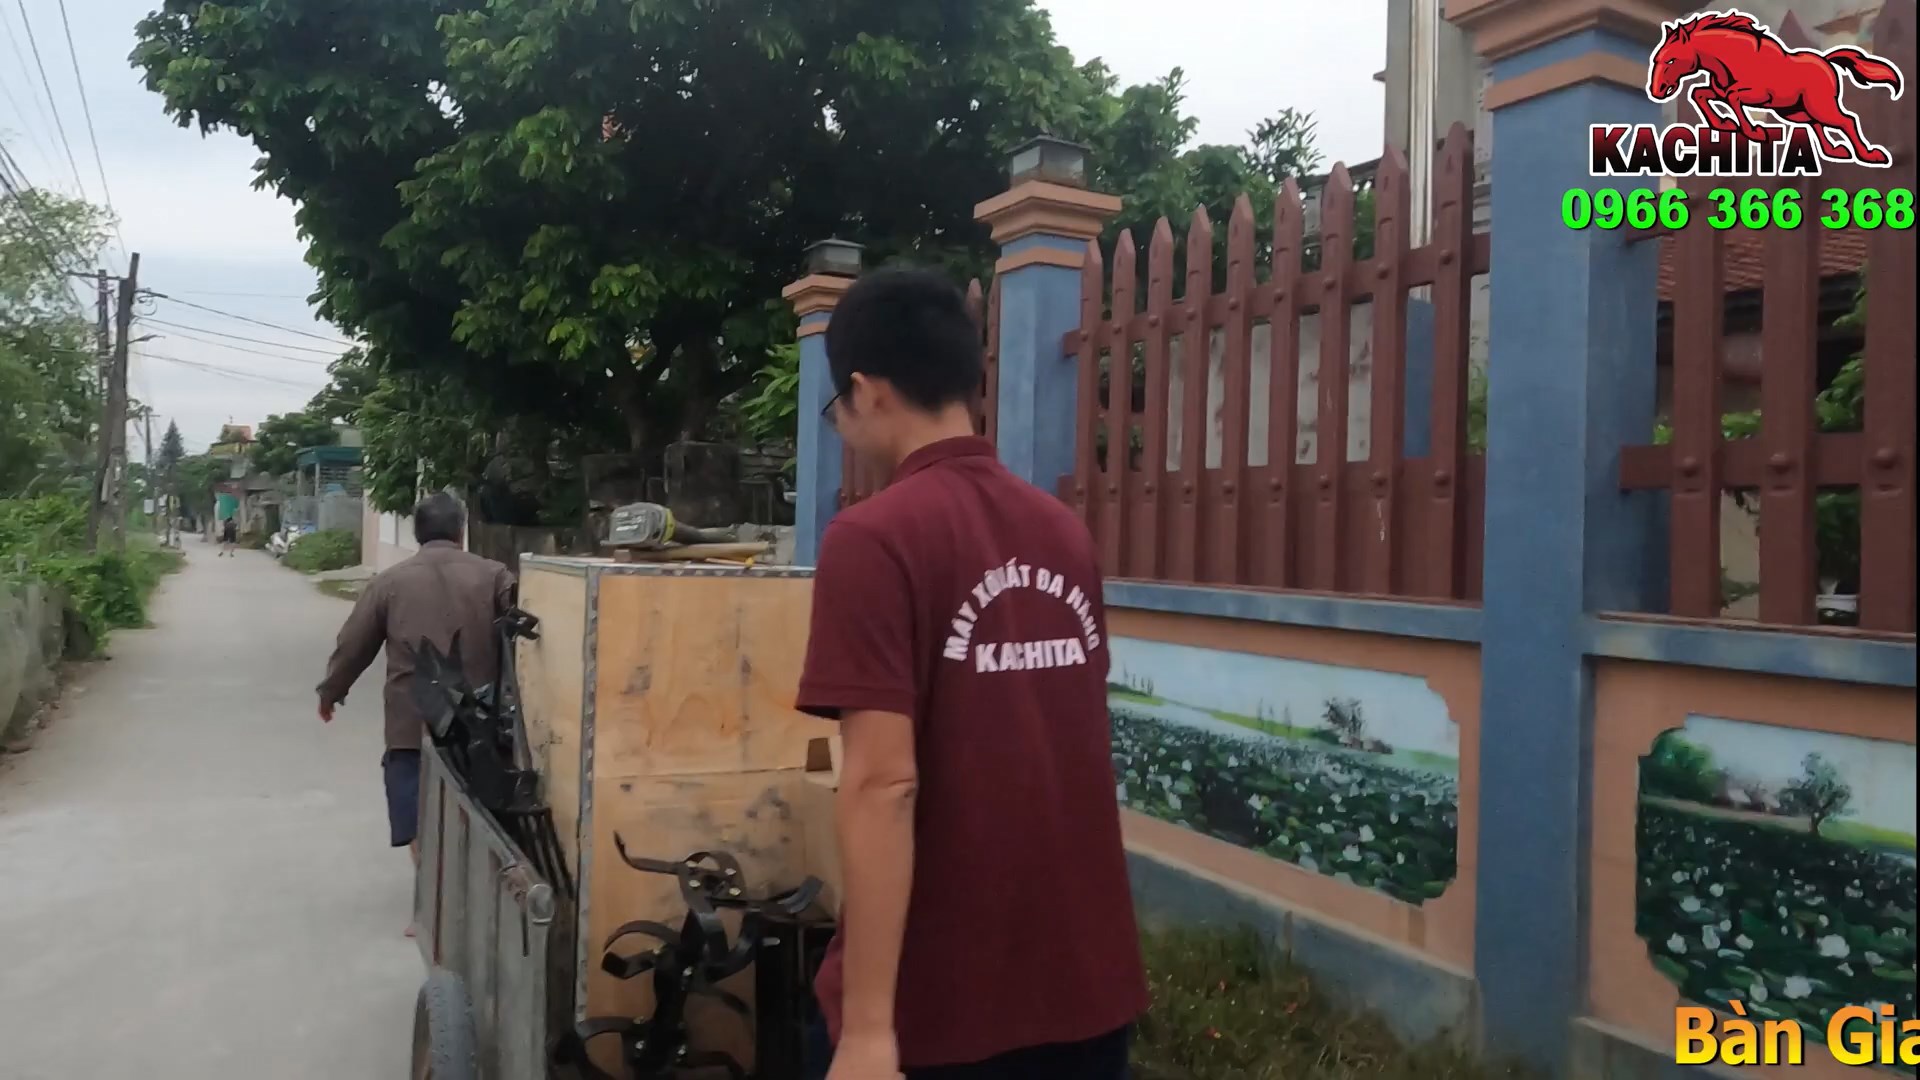 Bàn giao máy xới kachita 178m giật cót nổ tại Nam Định